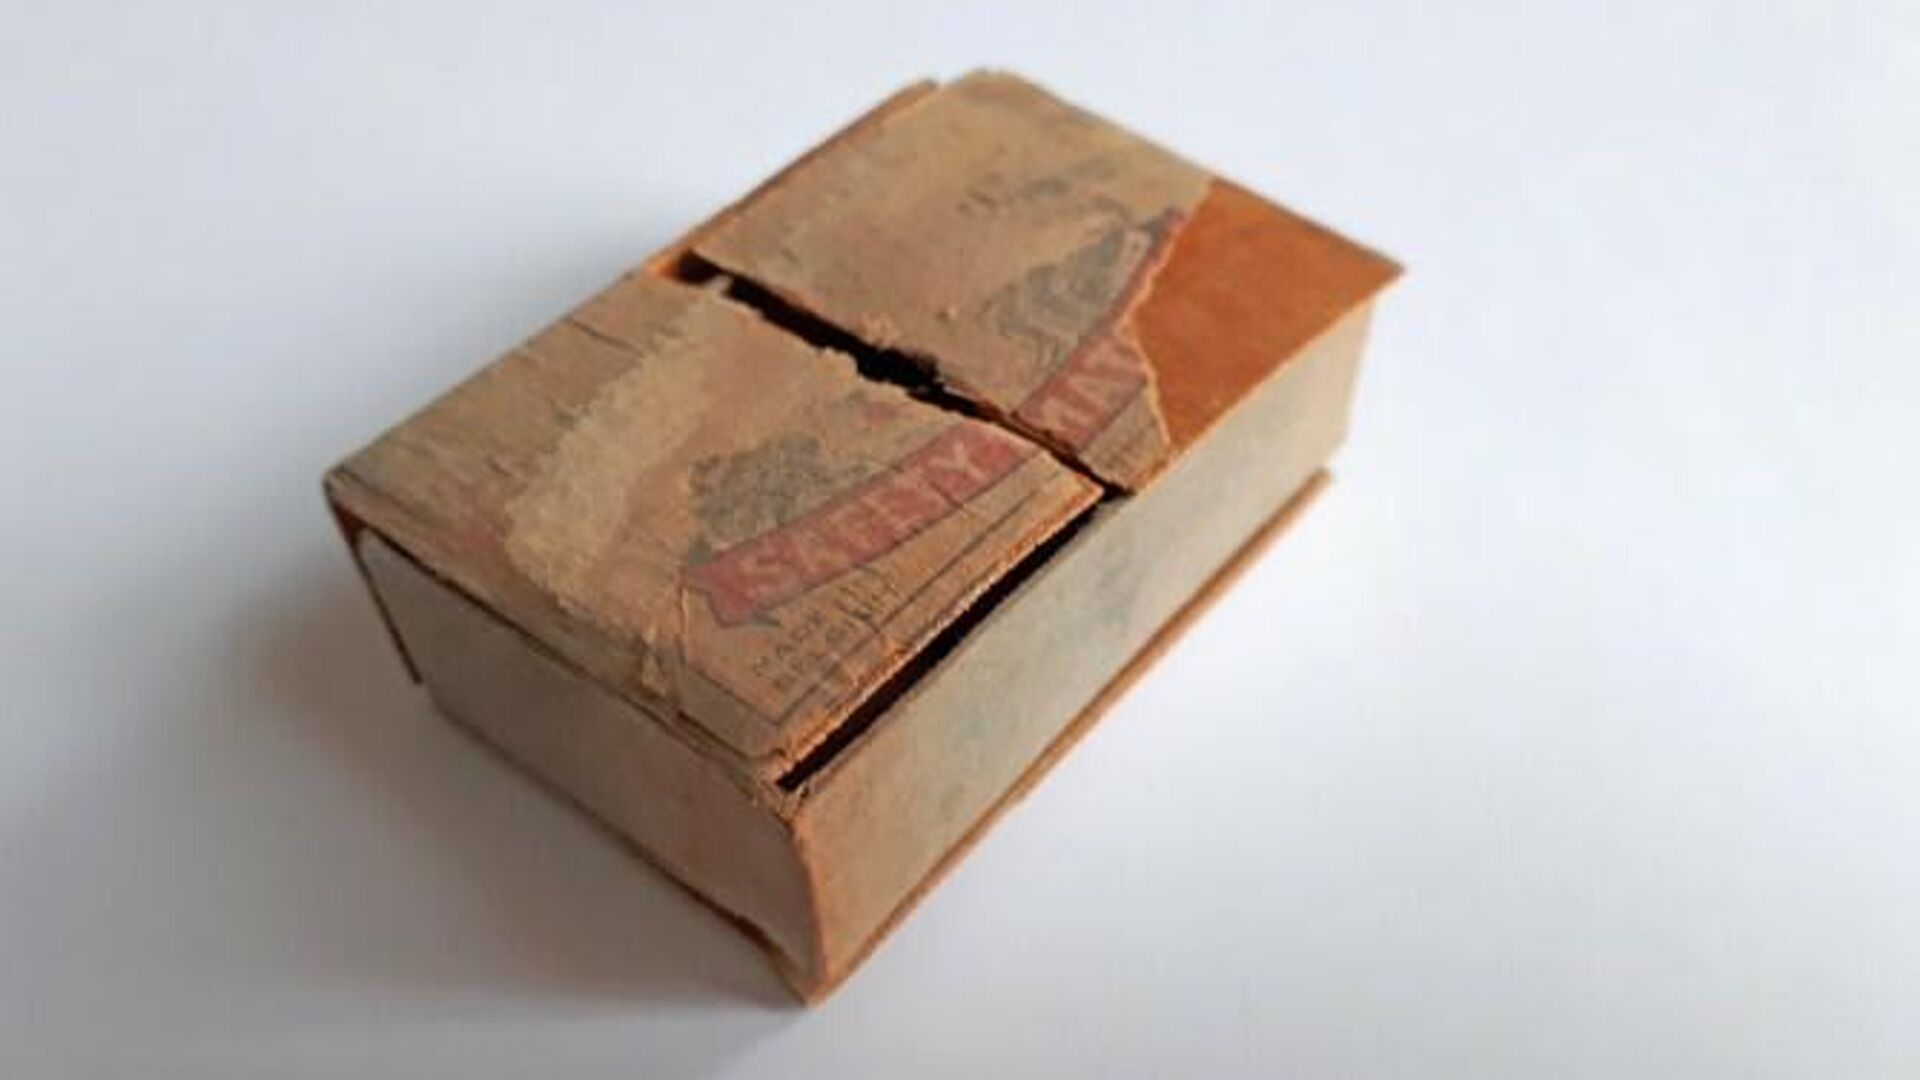 Найденный спичечный коробок с письмом в церкви Святого Иакова в Антверпене, Бельгия - РИА Новости, 1920, 28.10.2020